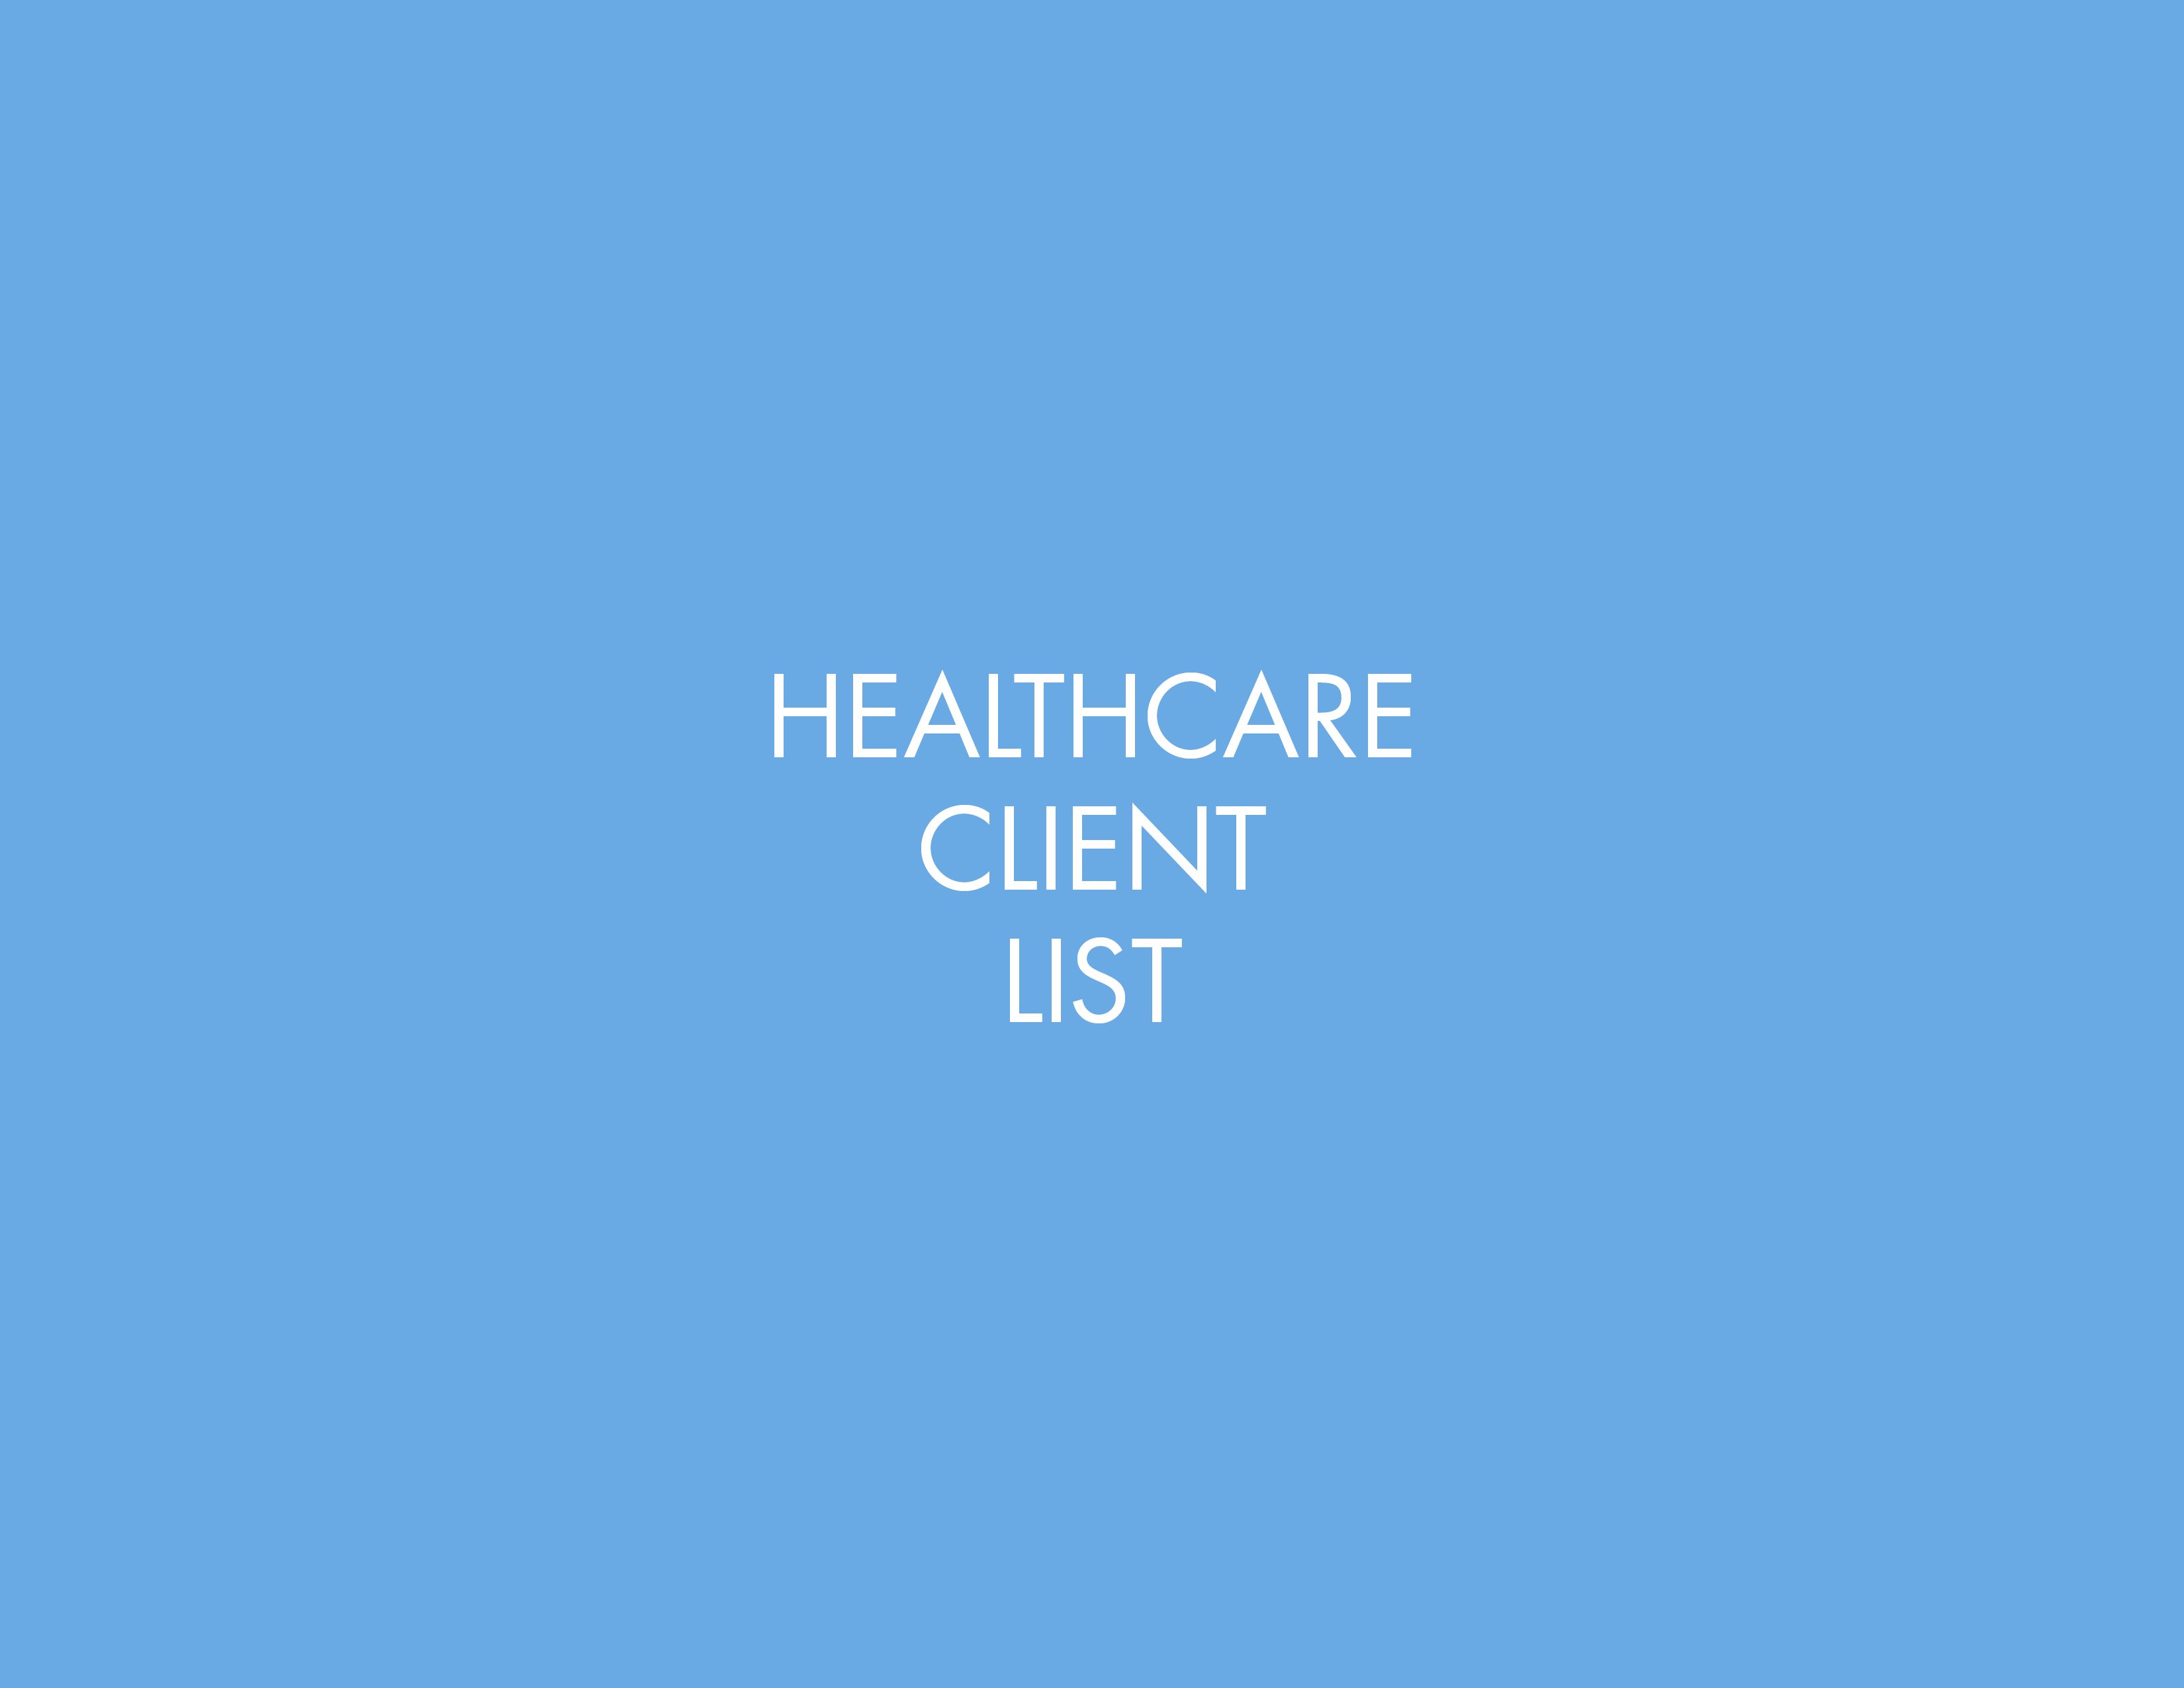 Healthcare Client List Images.jpg